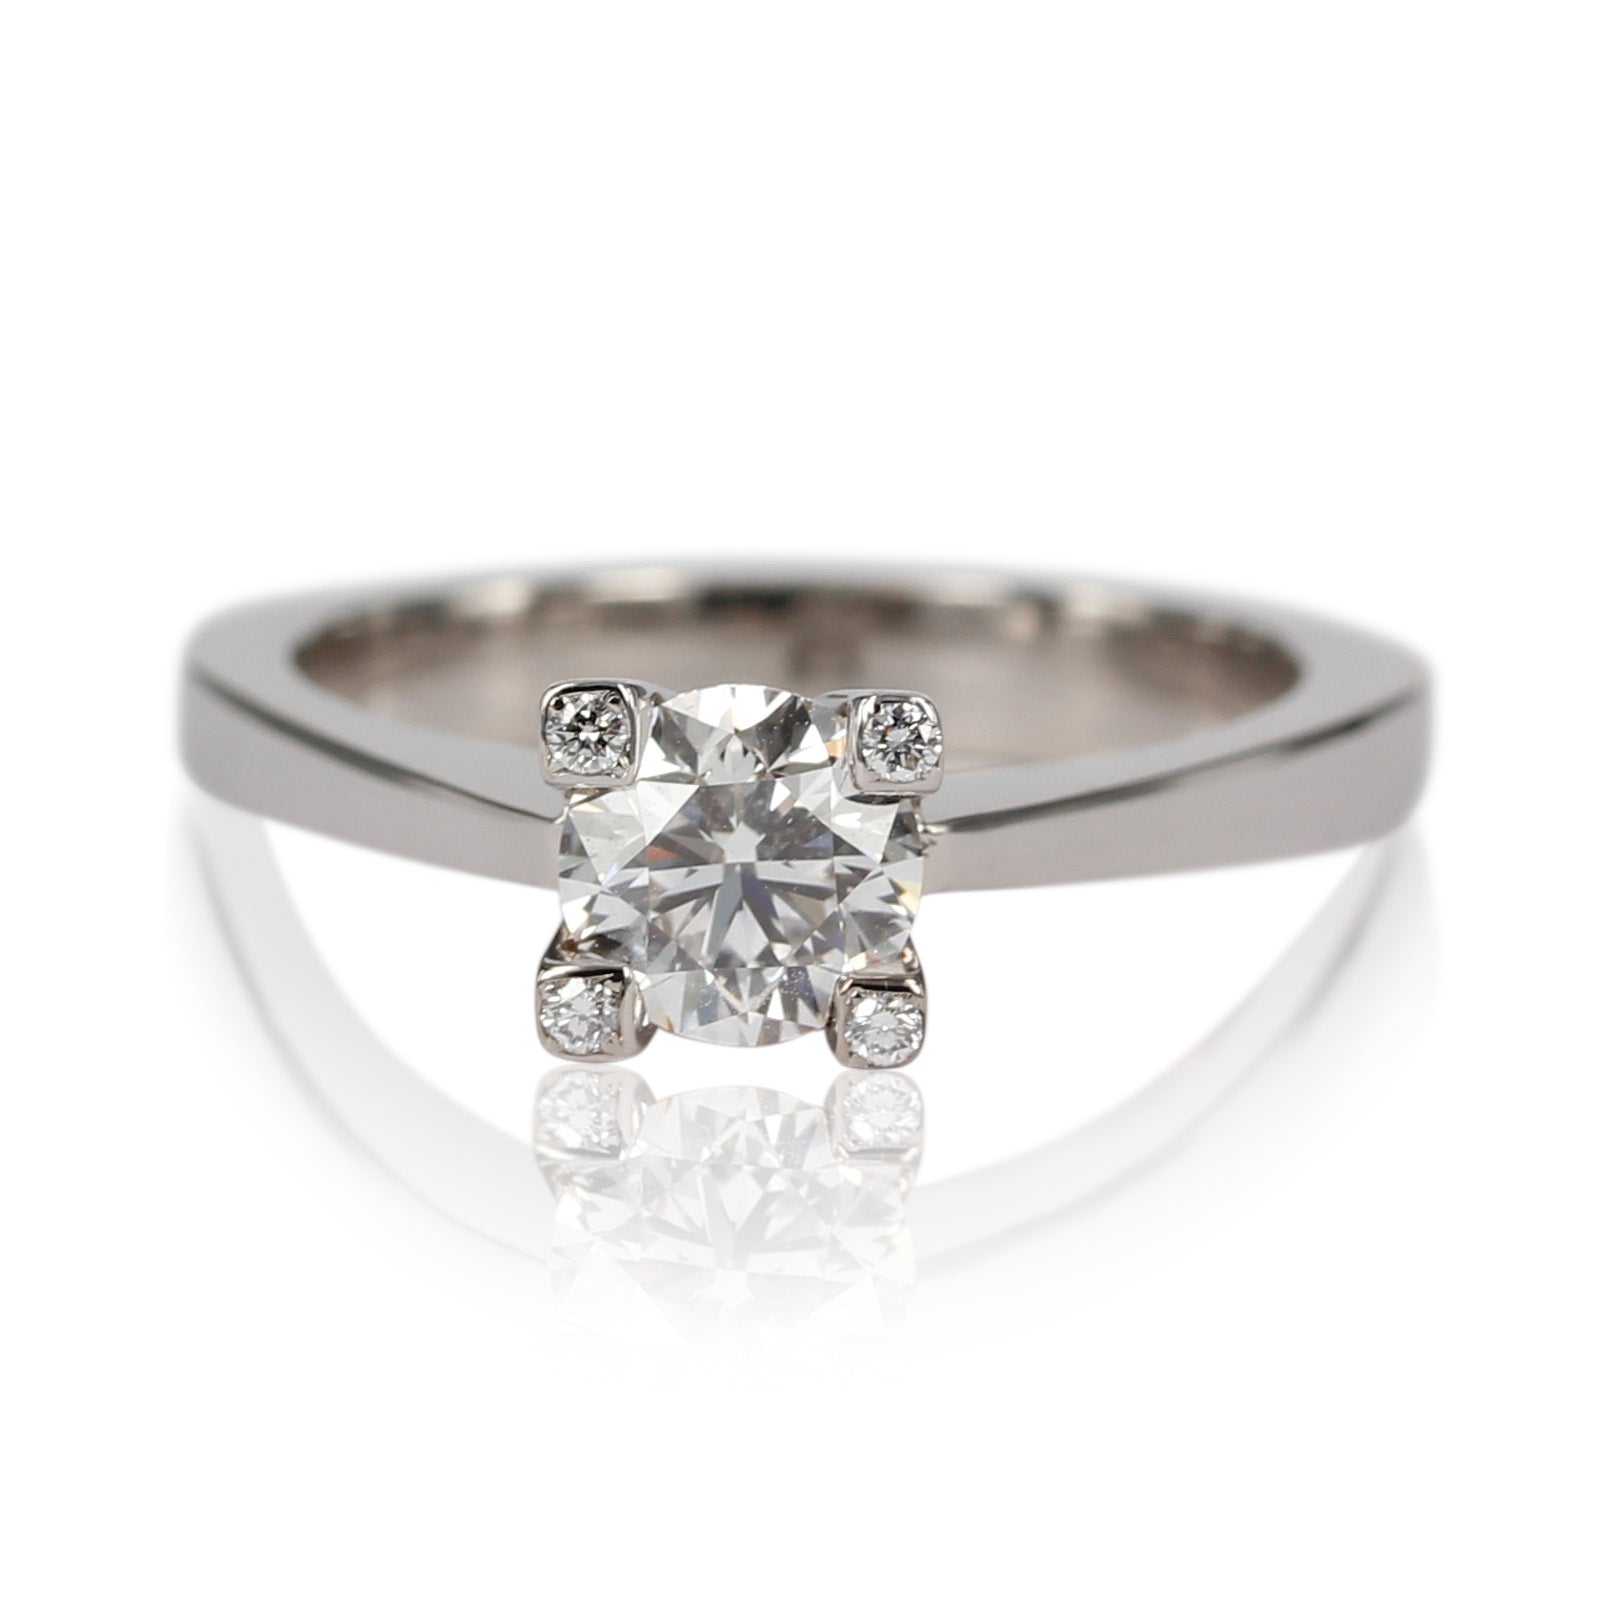 Smuk og klassisk diamantring, med 1 ct hvid diamant samt 4 diamanter i greb - hvidguld